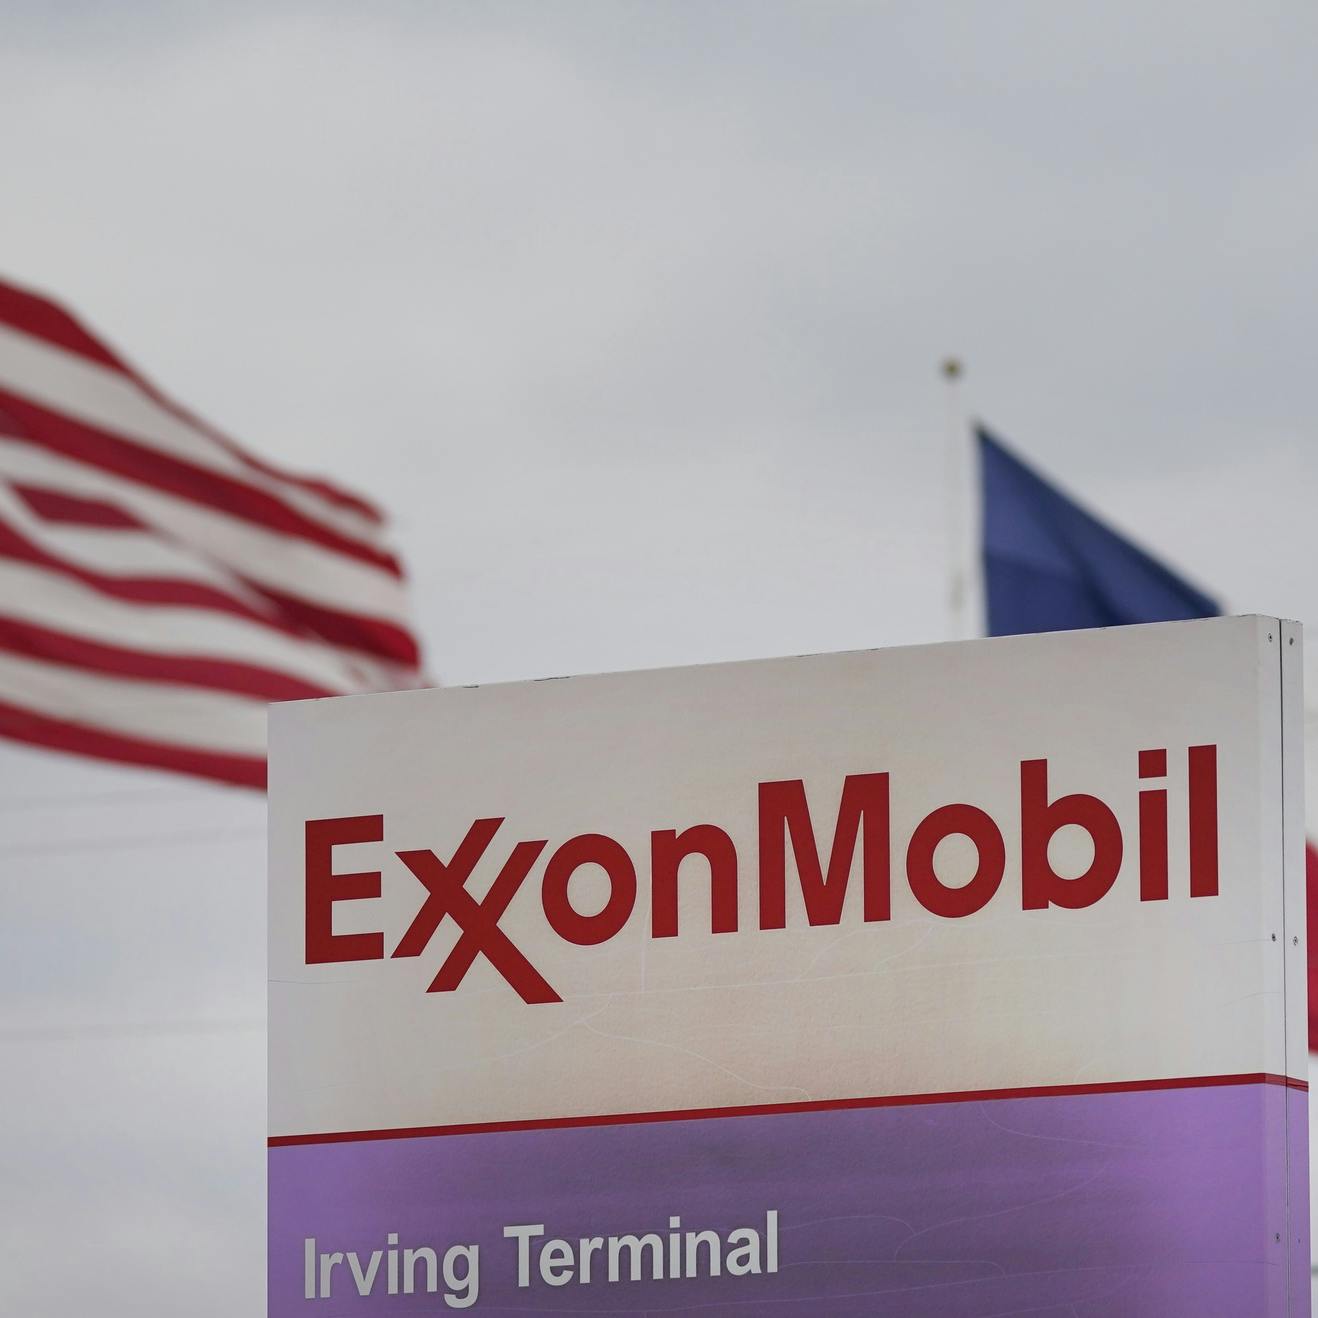 Miljardenwinst ExxonMobil zet kwaad bloed bij Biden